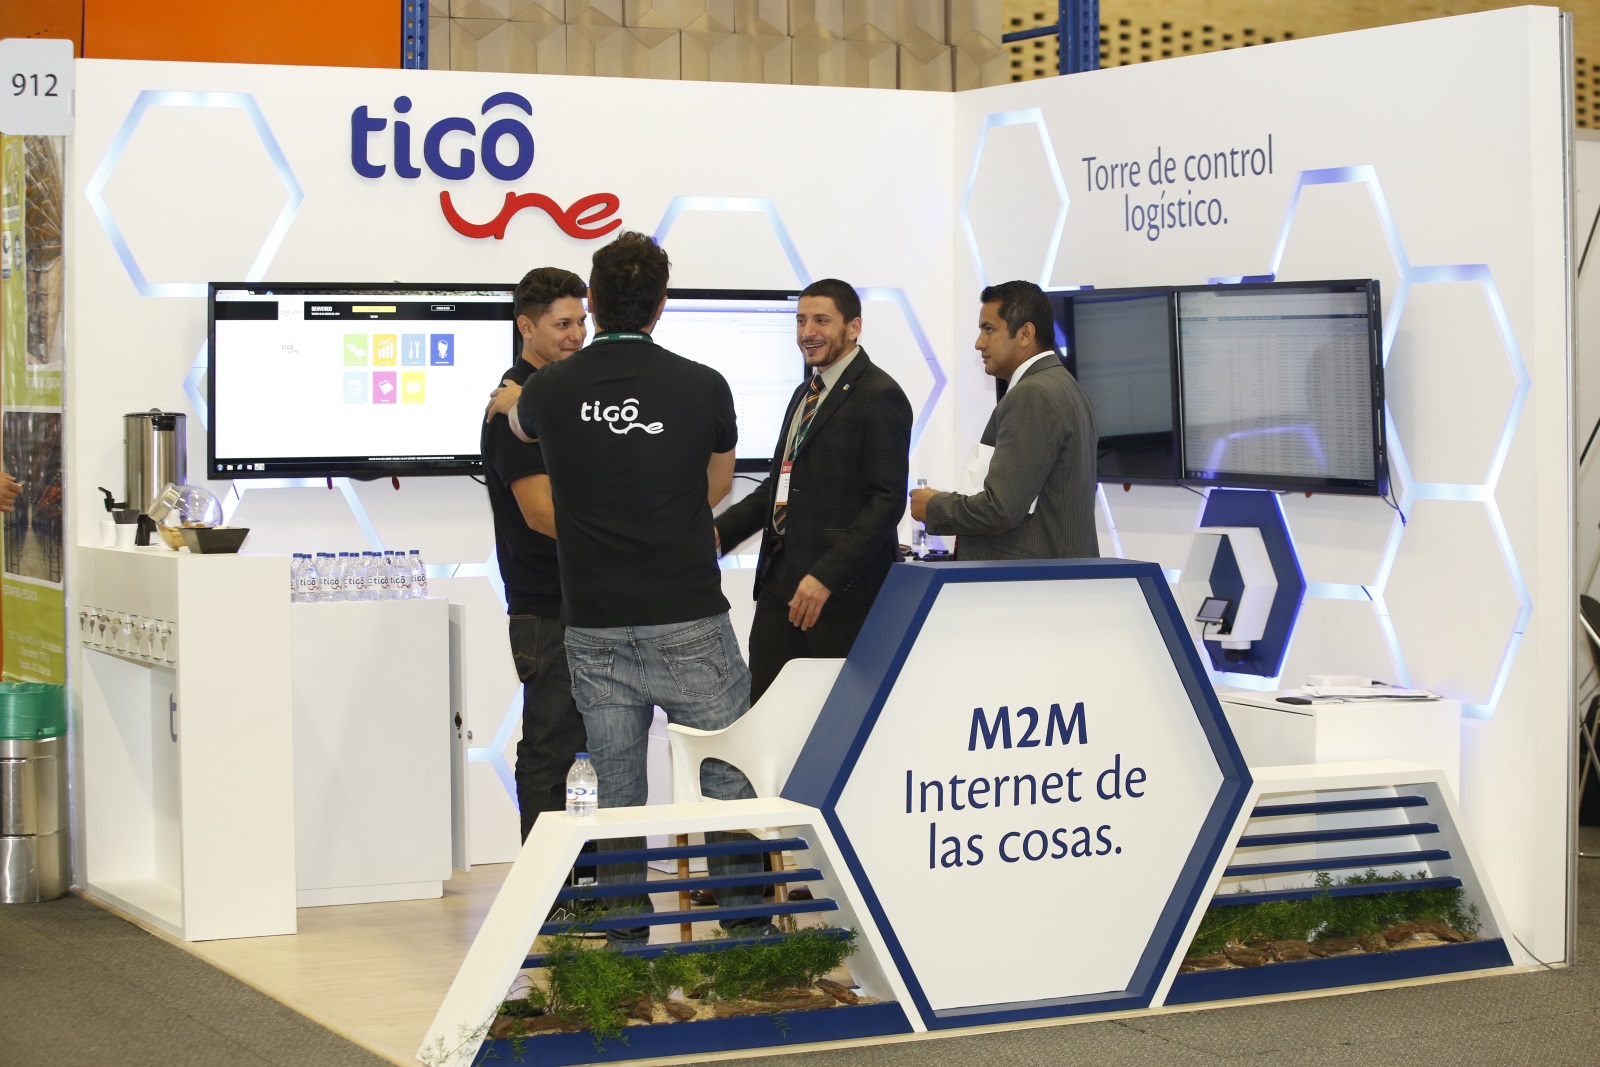 The Internet of Things, Tigo Business Forum 2017